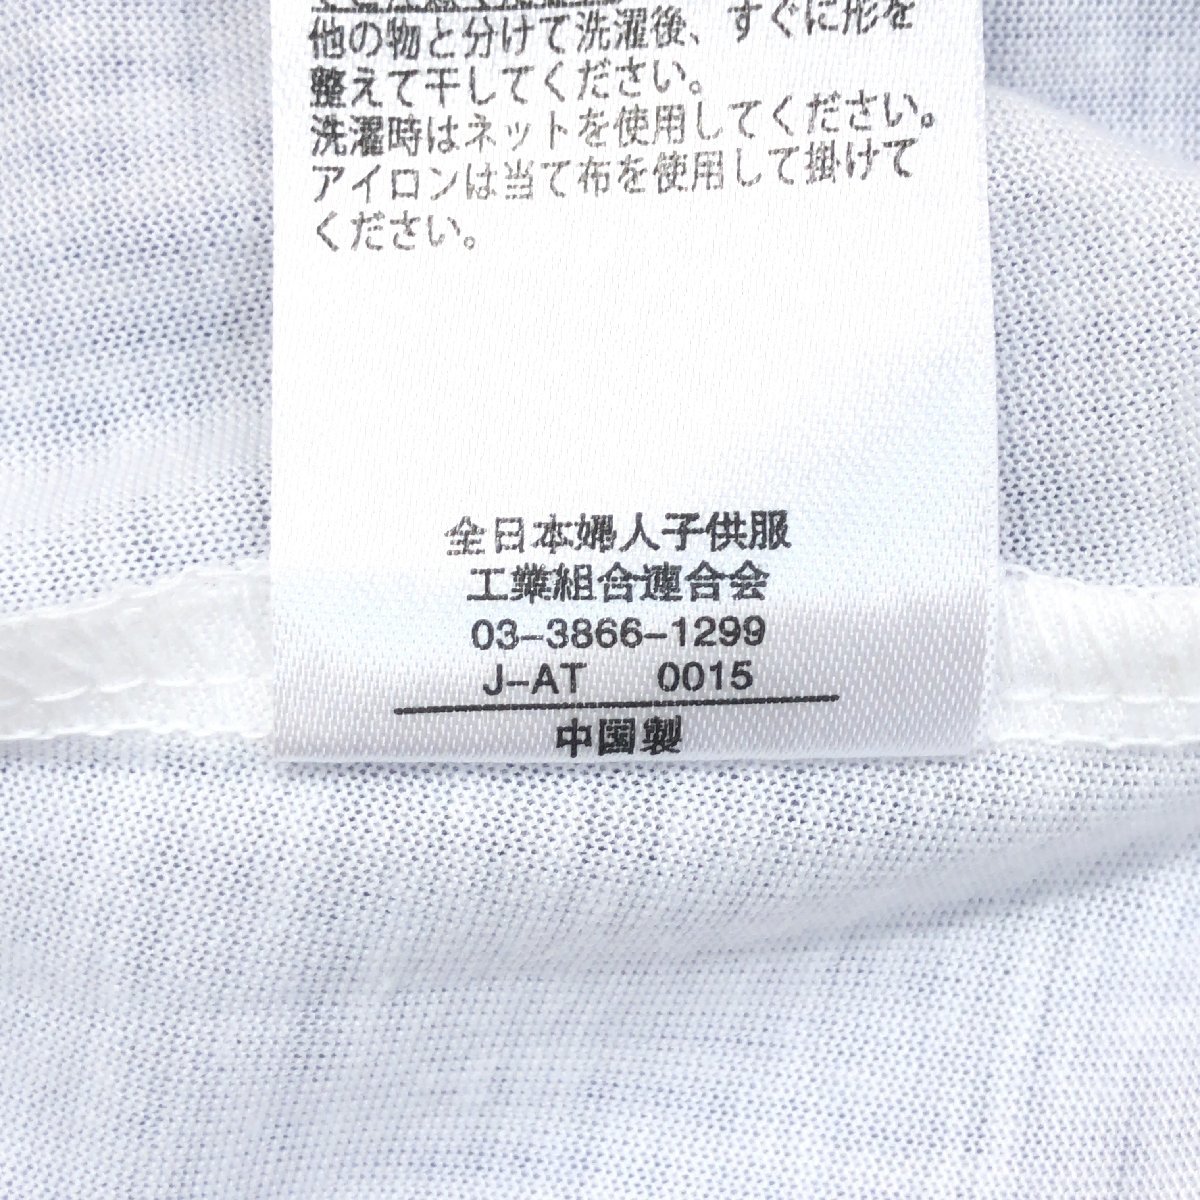 新品 Haf-ideal アッシュイデアル ストレッチ ストライプ レイヤード カットソー LL 白×青 半袖 Tシャツ XL 2L ゆったり 大きい 未使用の画像9